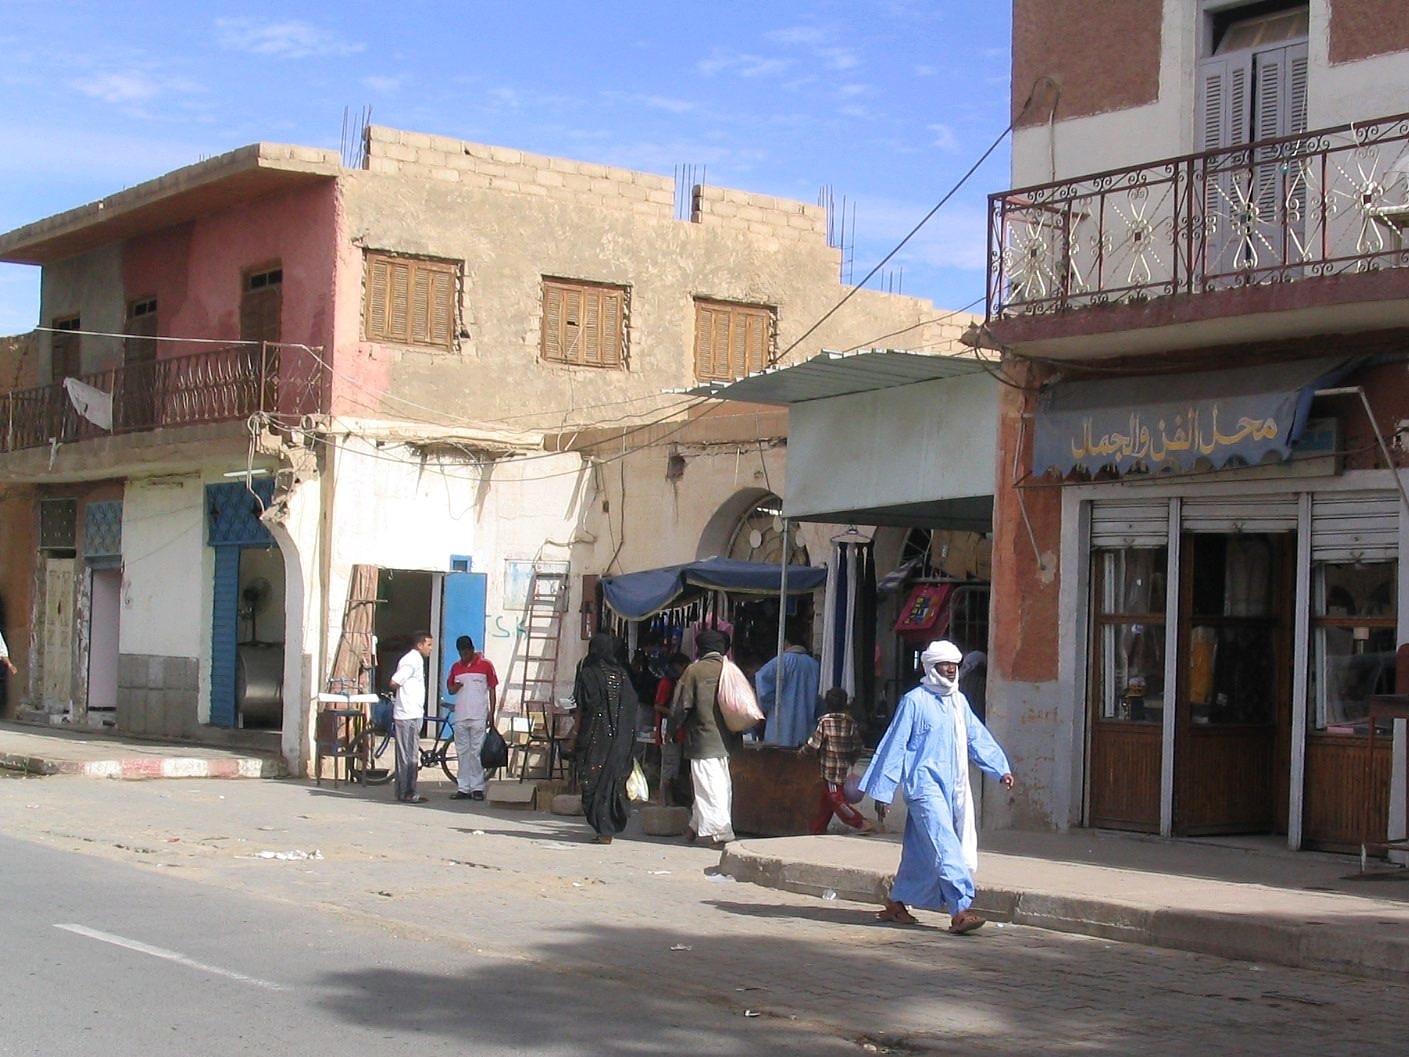 Tamanrasset, Algeria